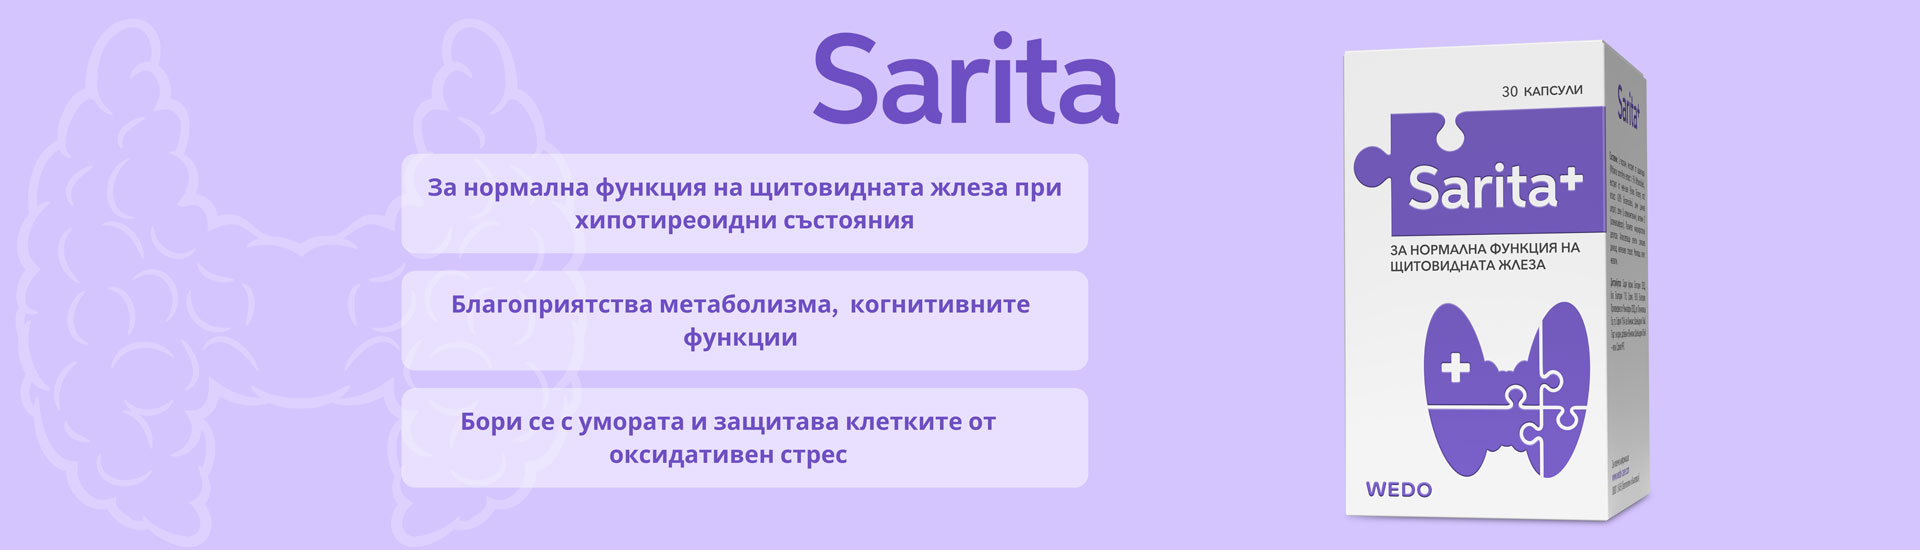 SARITA